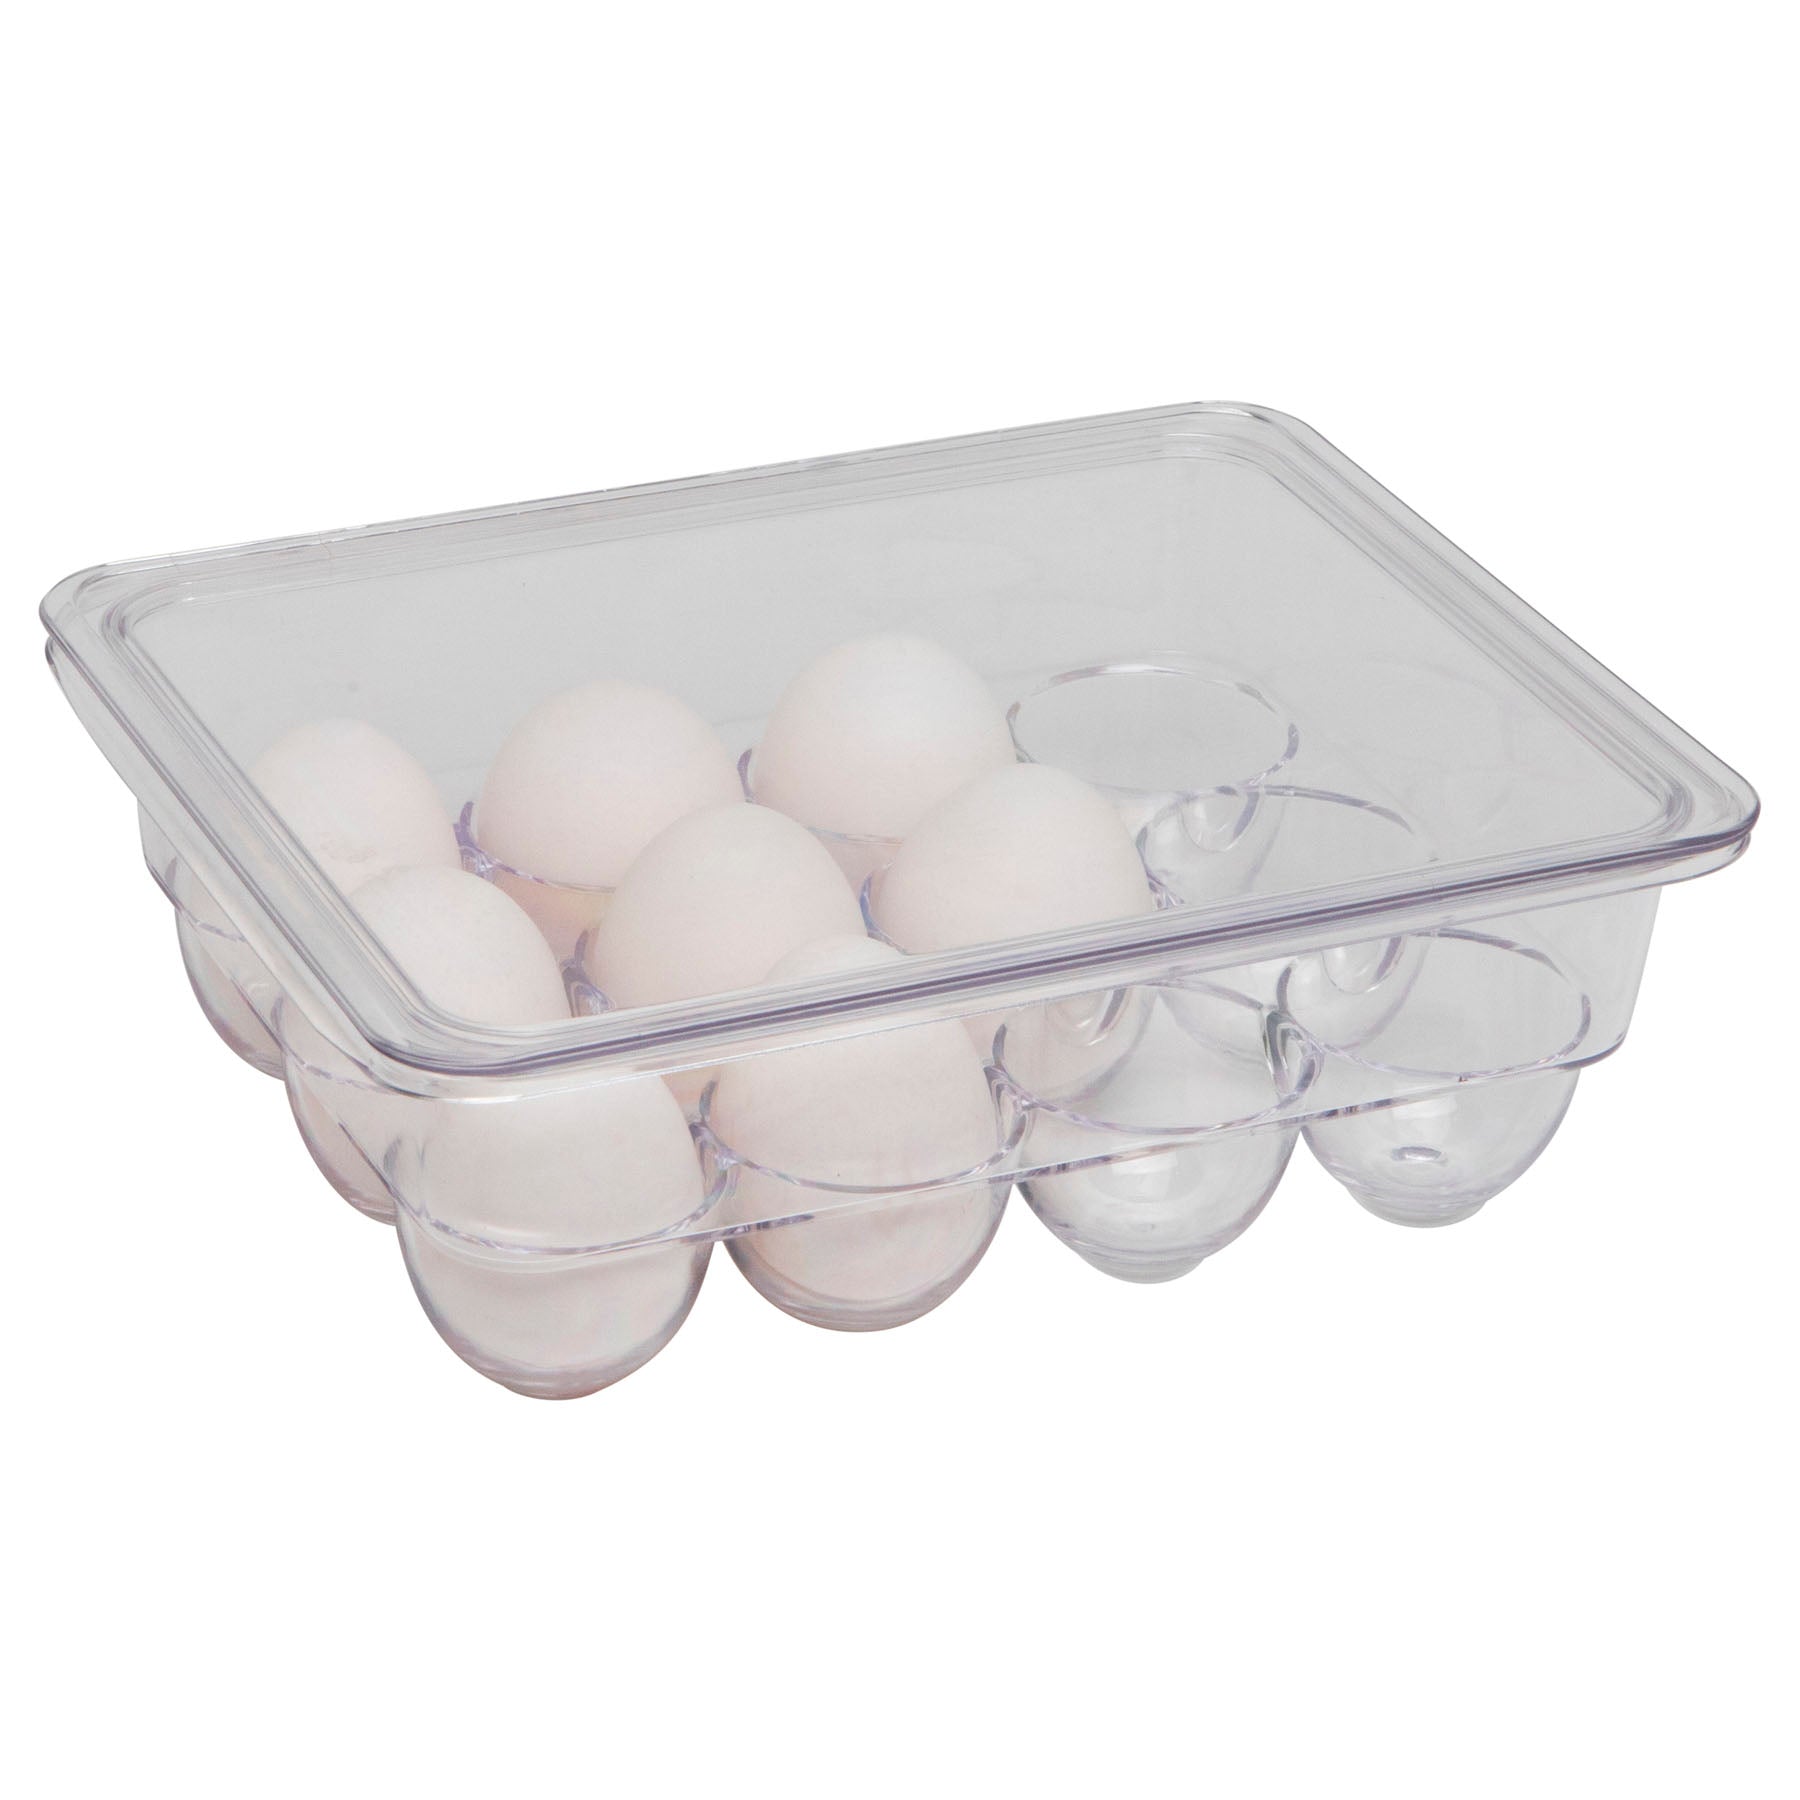 Plastic egg holder - Clear Color